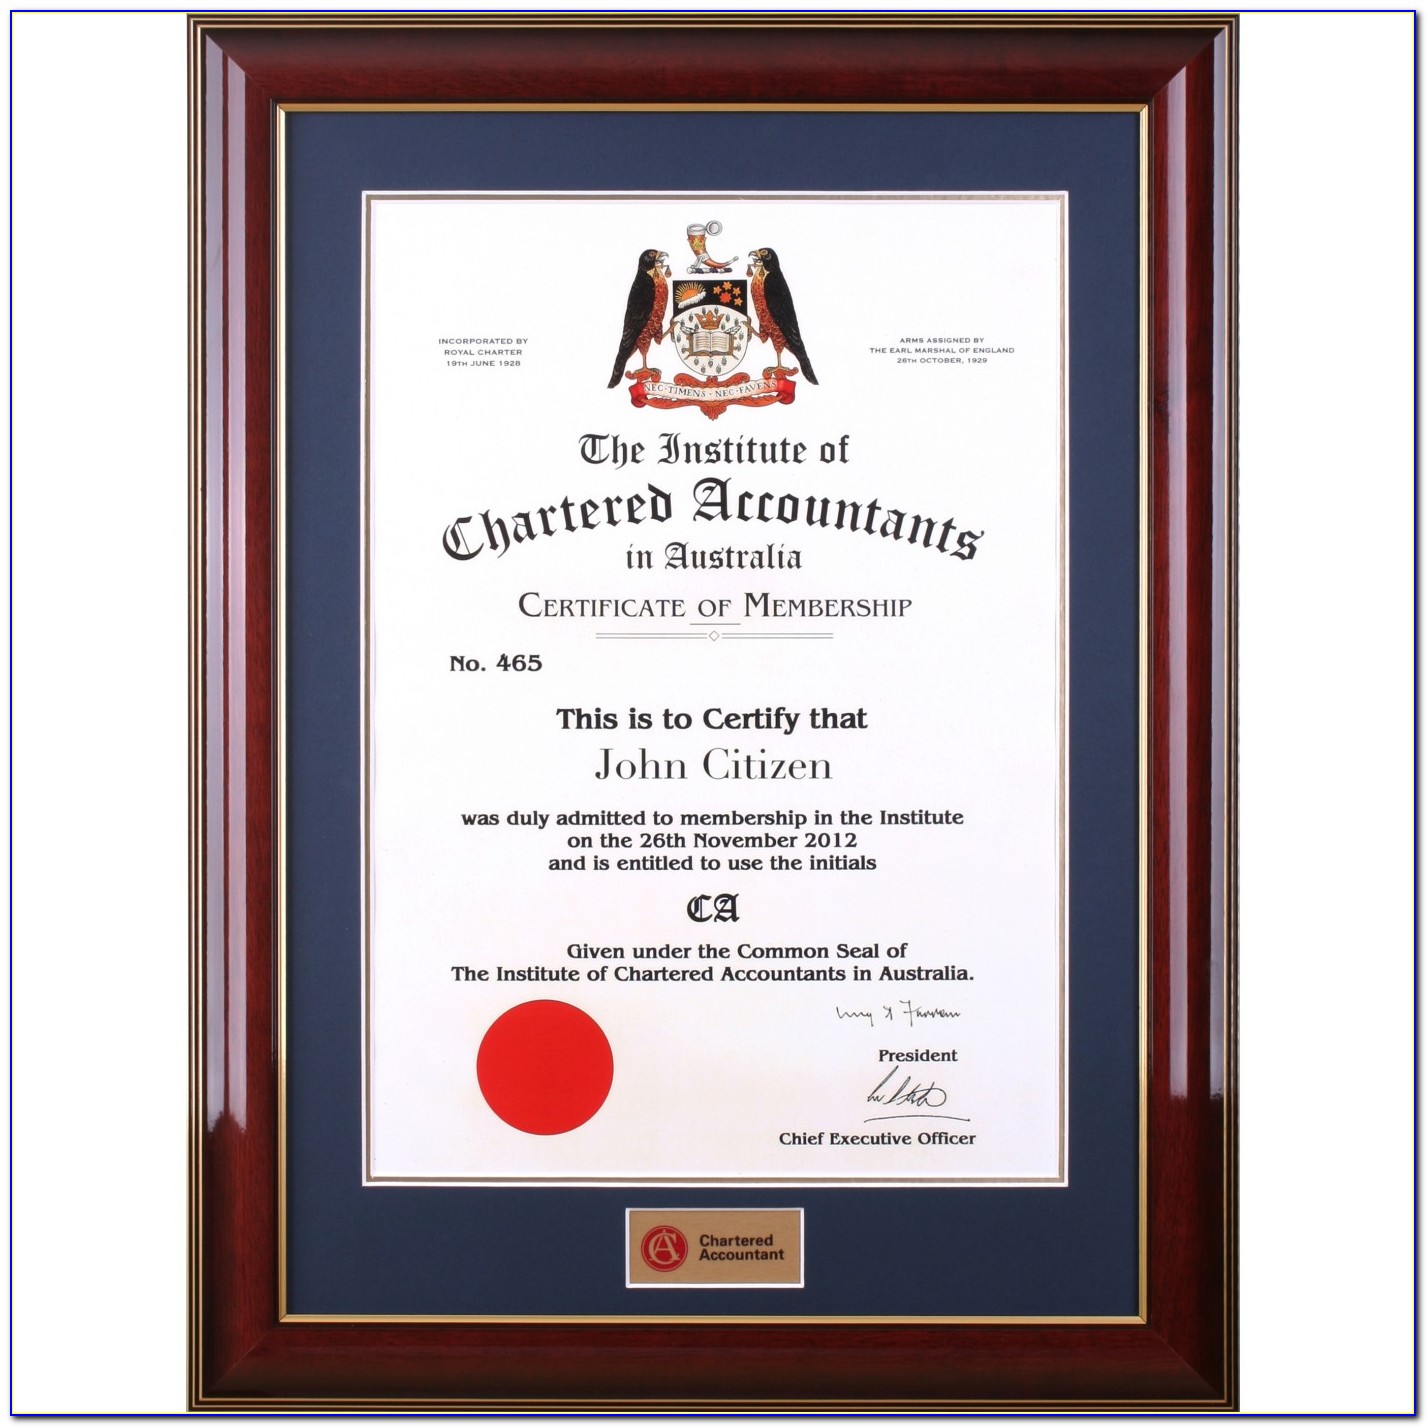 Cpa Certificate Frame California